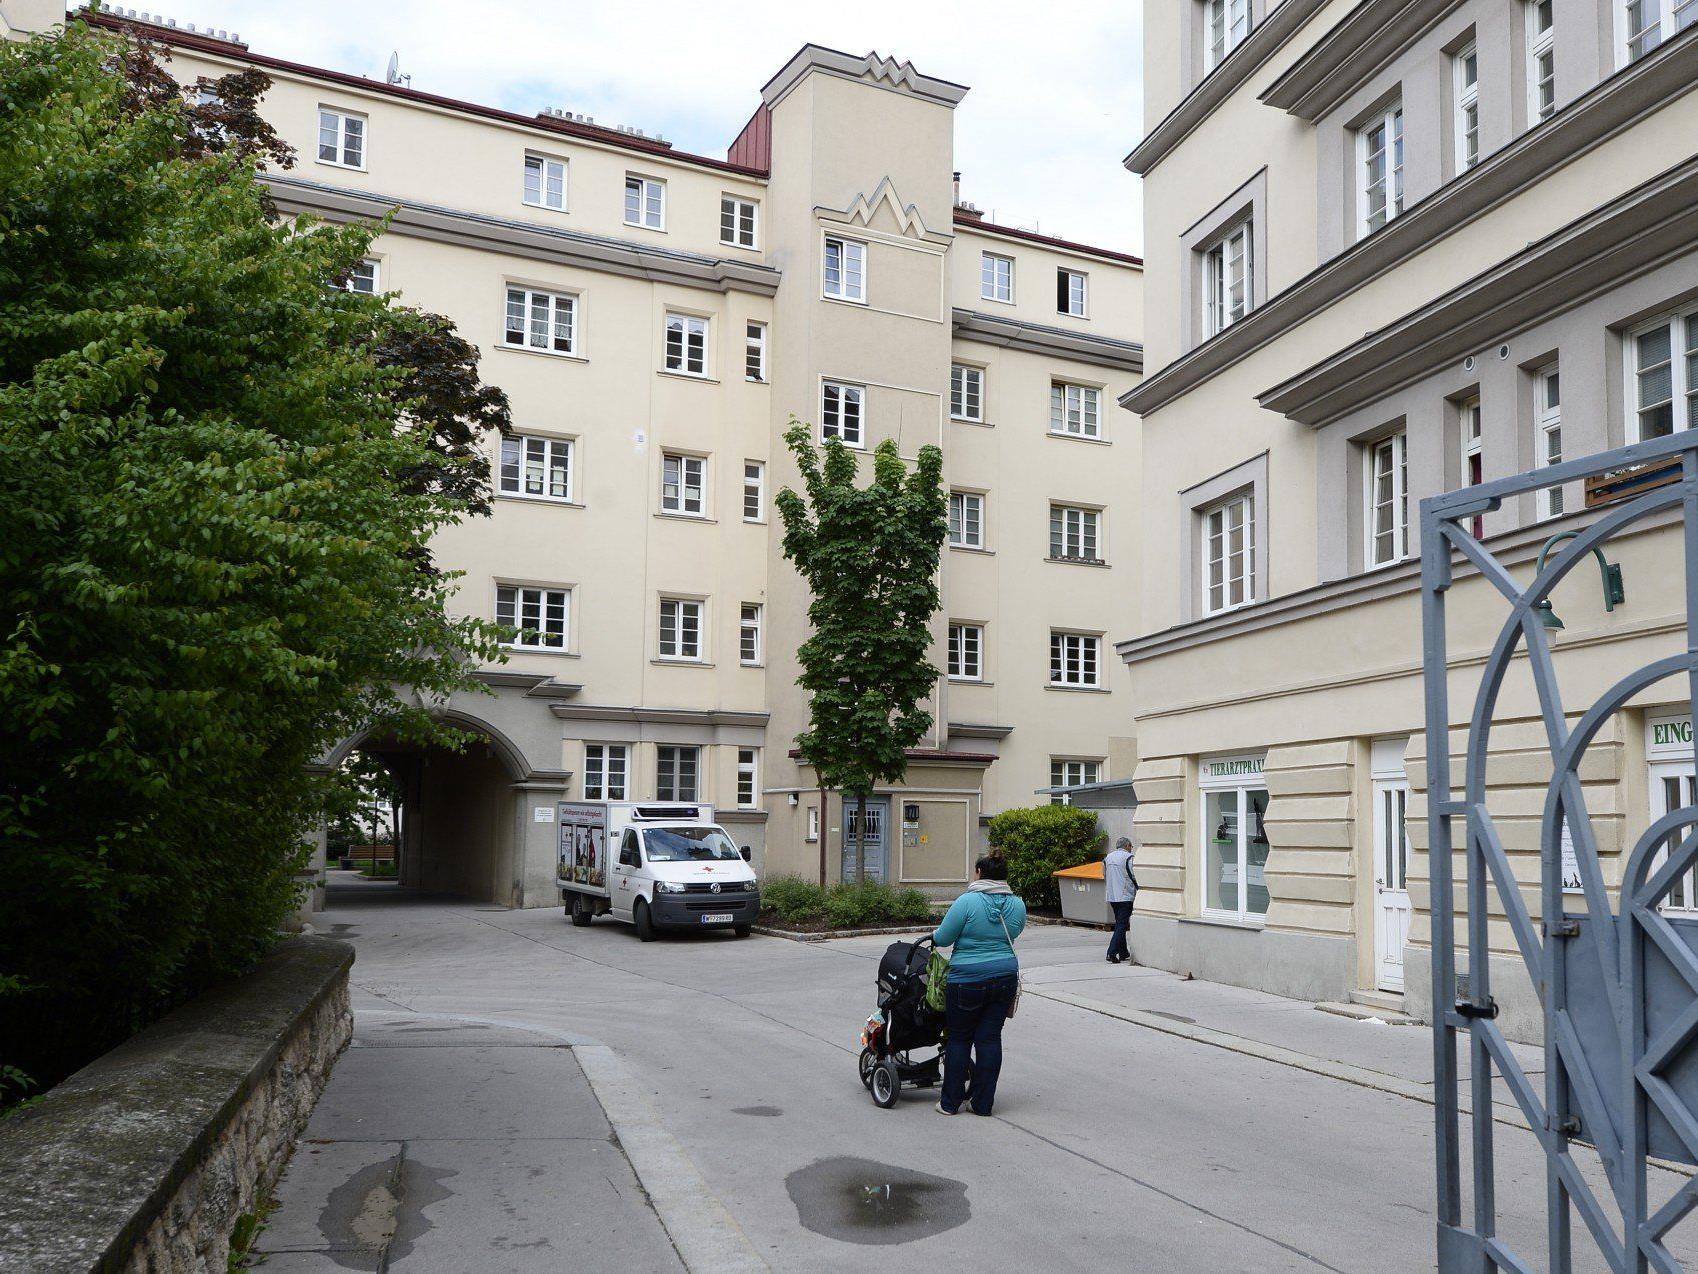 Wiener in seiner Wohnung getötet: Zwei Festnahmen